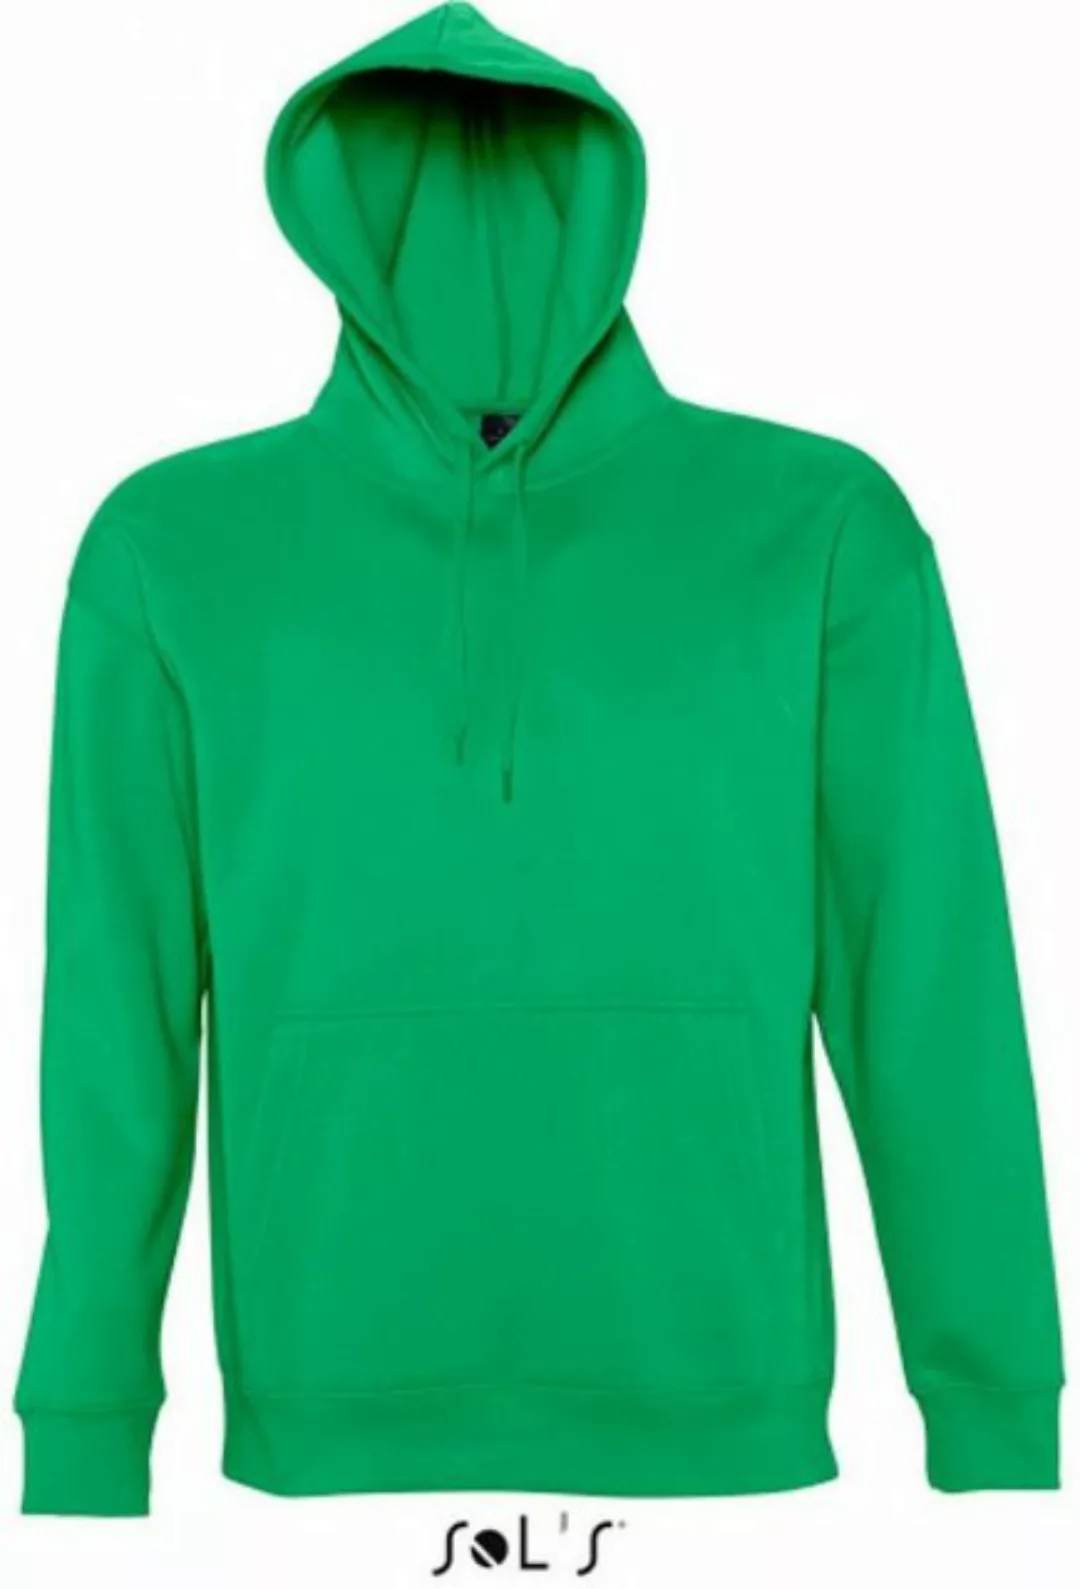 SOLS Kapuzenpullover Hooded-Sweater Slam / Damen Kapuzenpulli günstig online kaufen